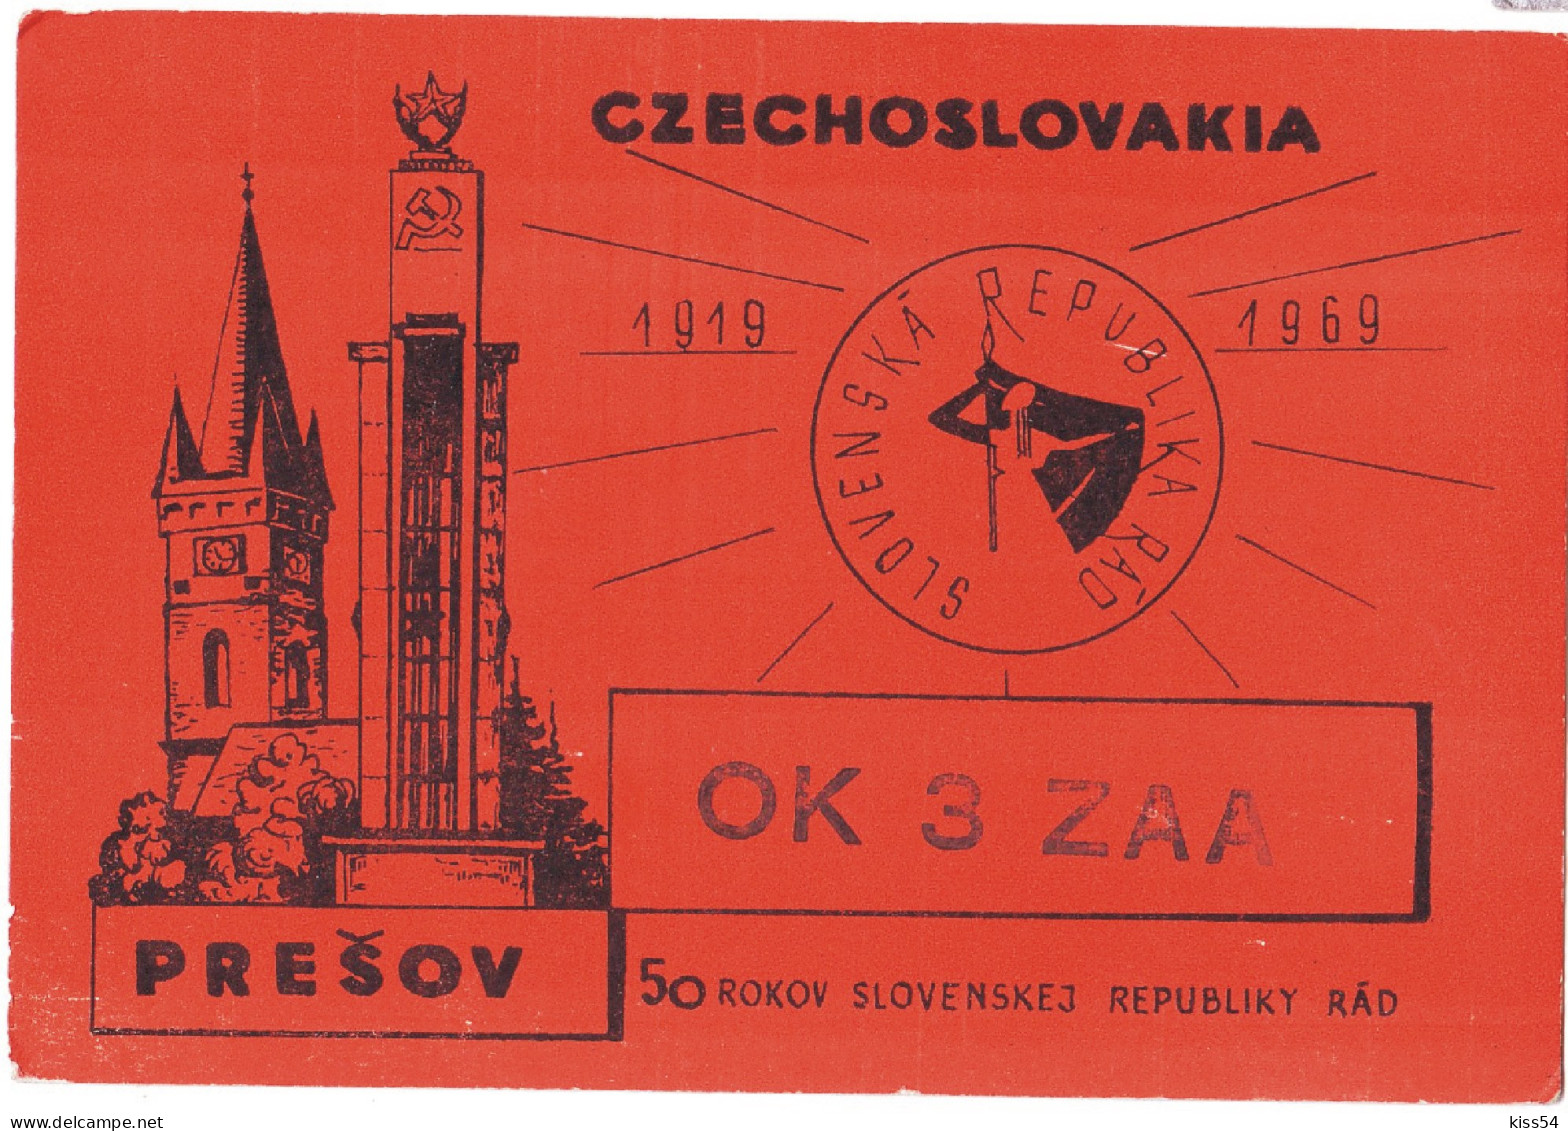 Q 38 - 171-a CZECHOSLOVAKIA - 1968 - Radio-amateur